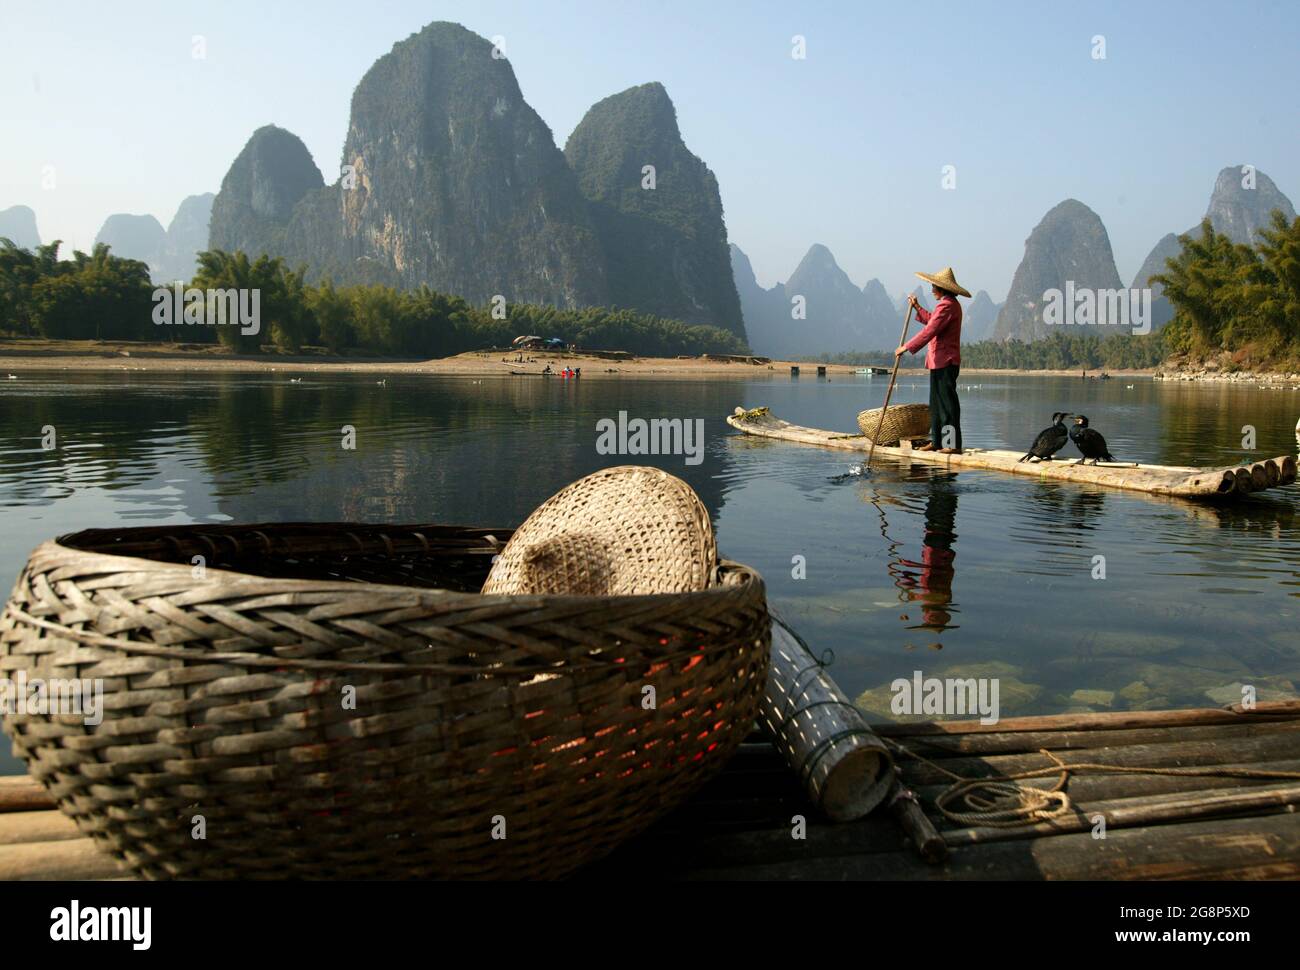 Die kormoranischen Fischerfrauen sind die Touristenattraktion am Fluss Li, Xingping, China, Ostasien Stockfoto